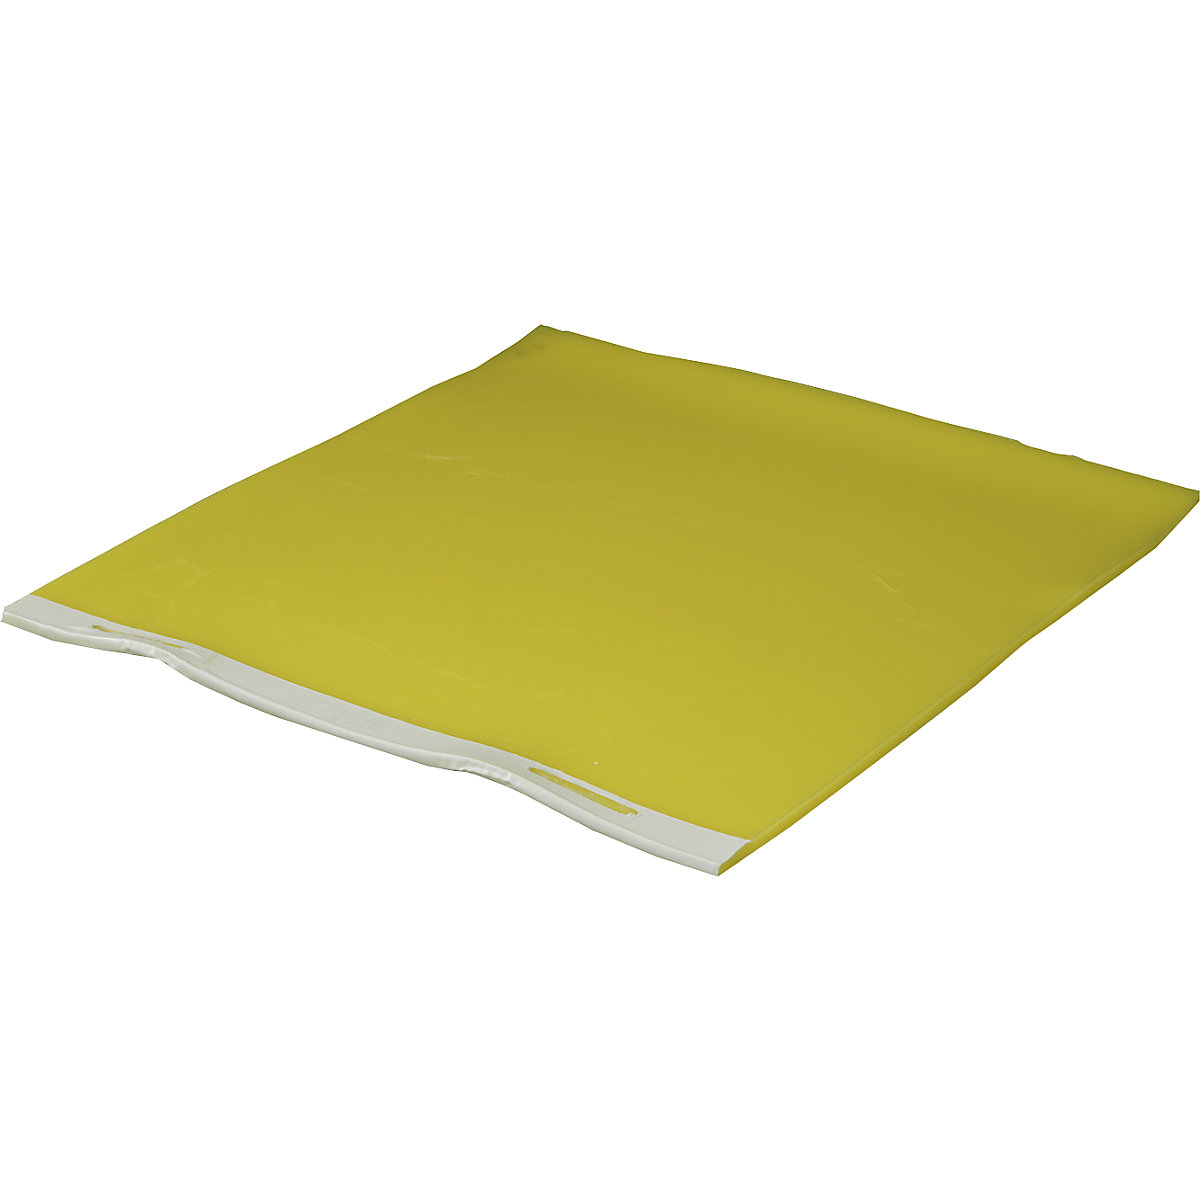 Plaque d'obturation de 8 mm d'épaisseur, réutilisable, carrée, L x l 1000 x 1000 mm